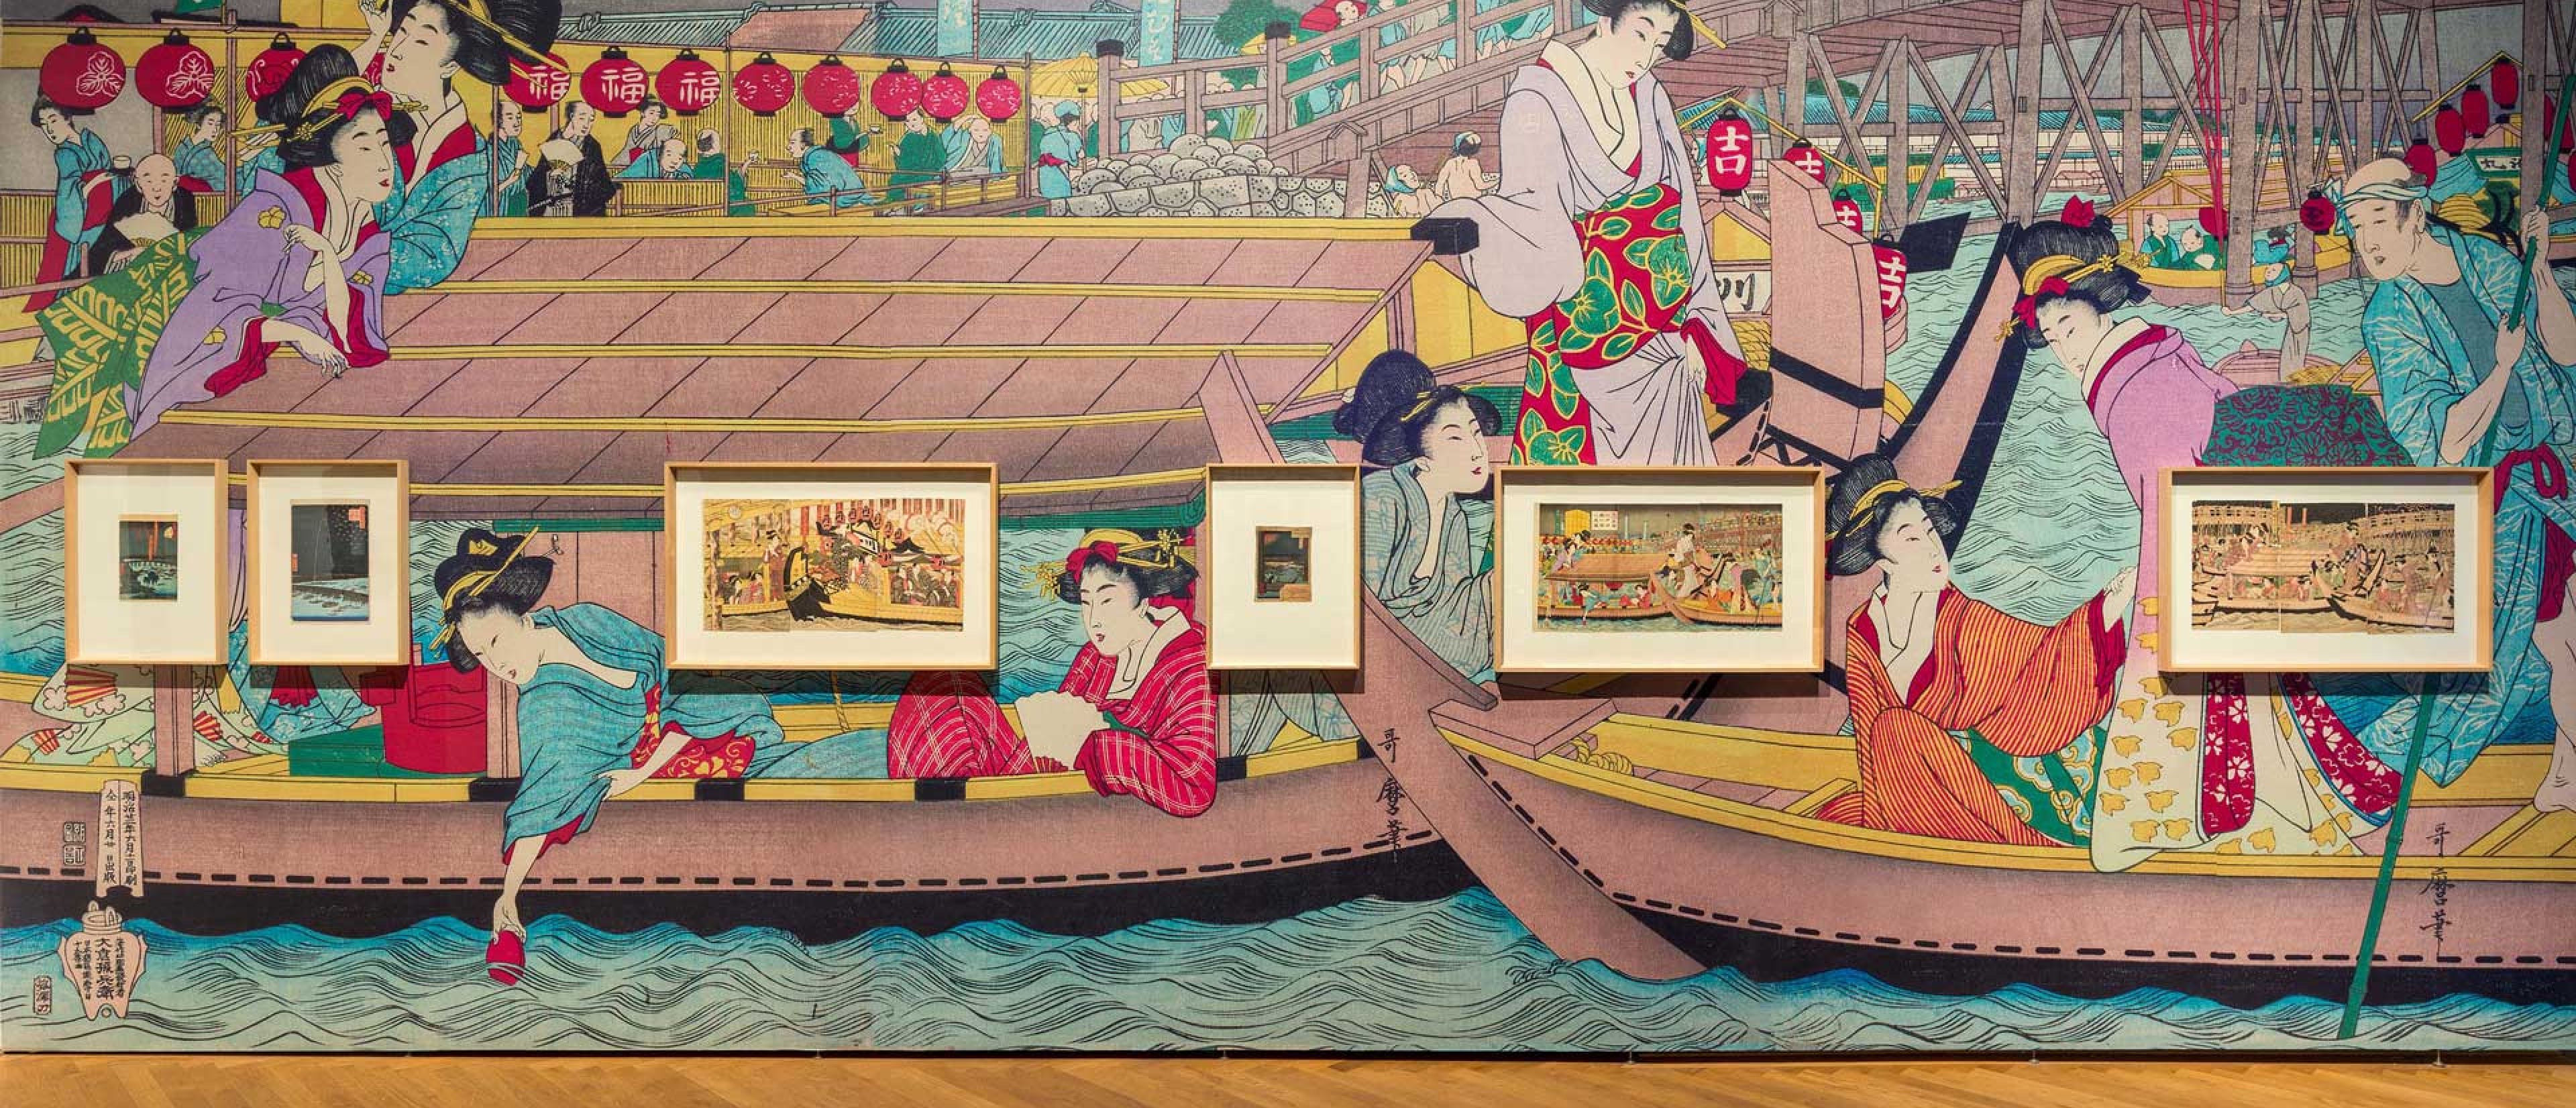 Wand mit japanischen Farbholzschnitten, die Tapete der Wand ist ein übergroßer Farbholzschnitt